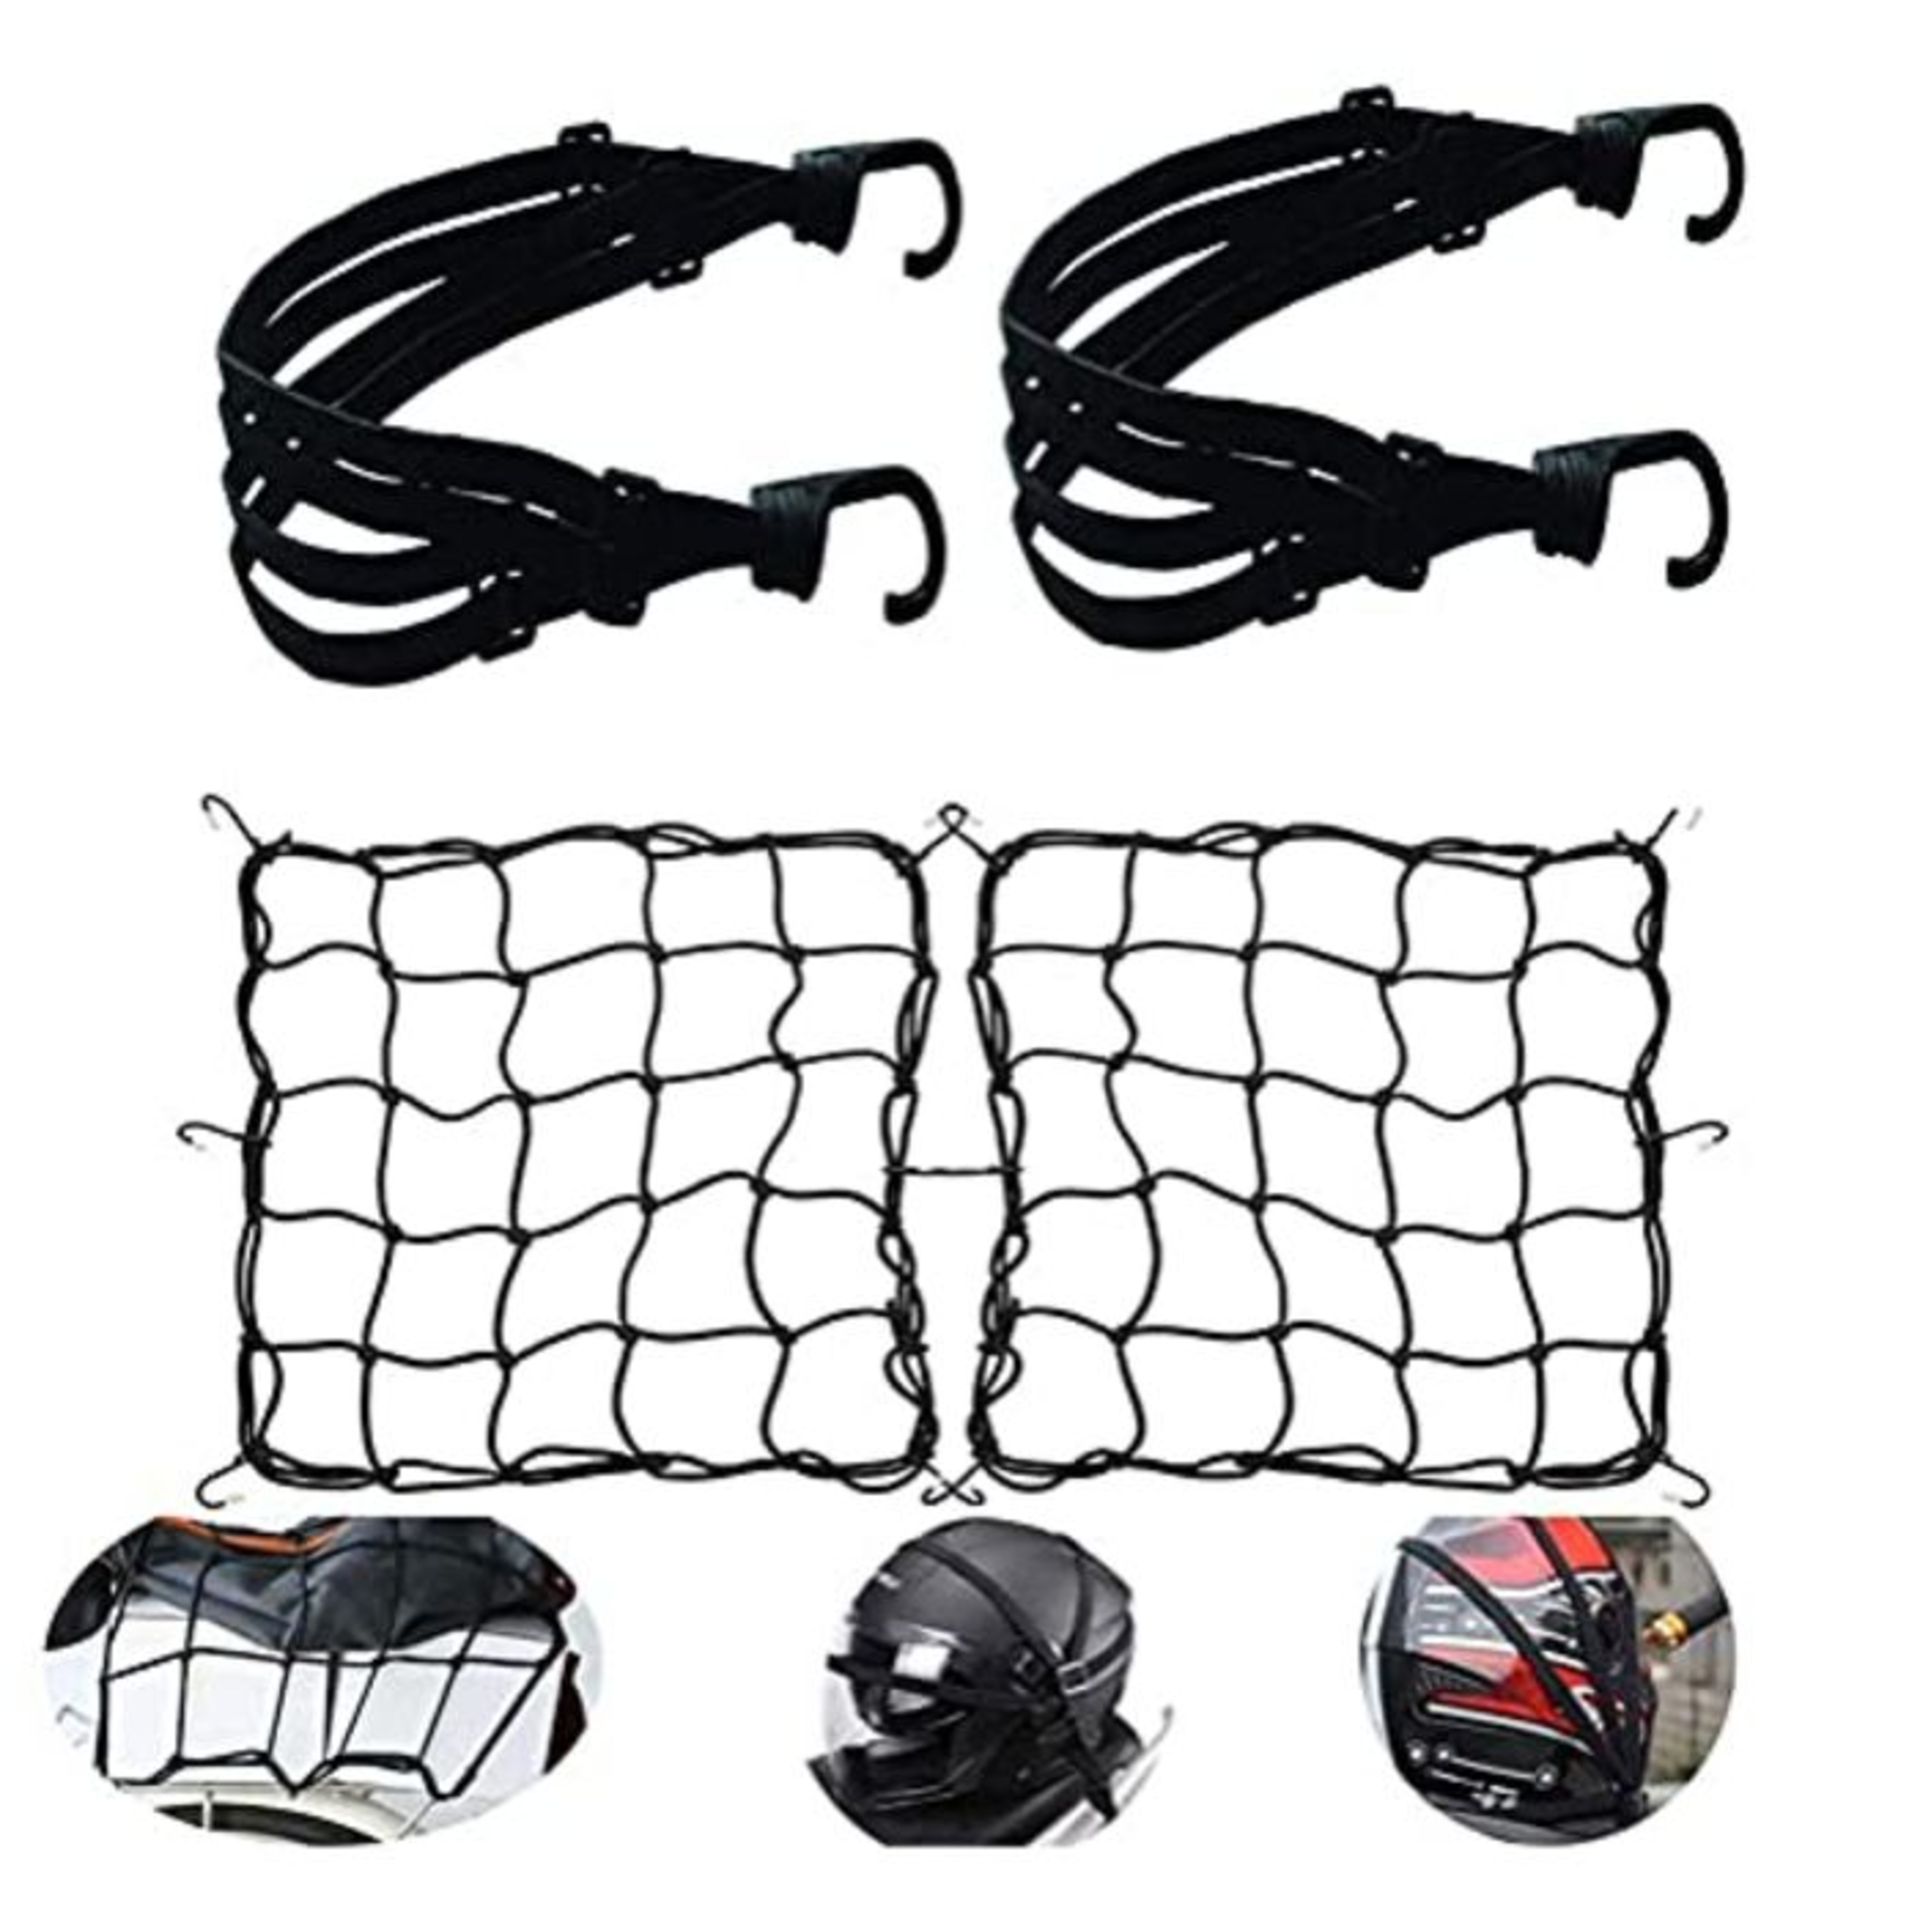 Pack of 2 motorcycle luggage net, bicycle net, helmet net with hook, tension net, safe